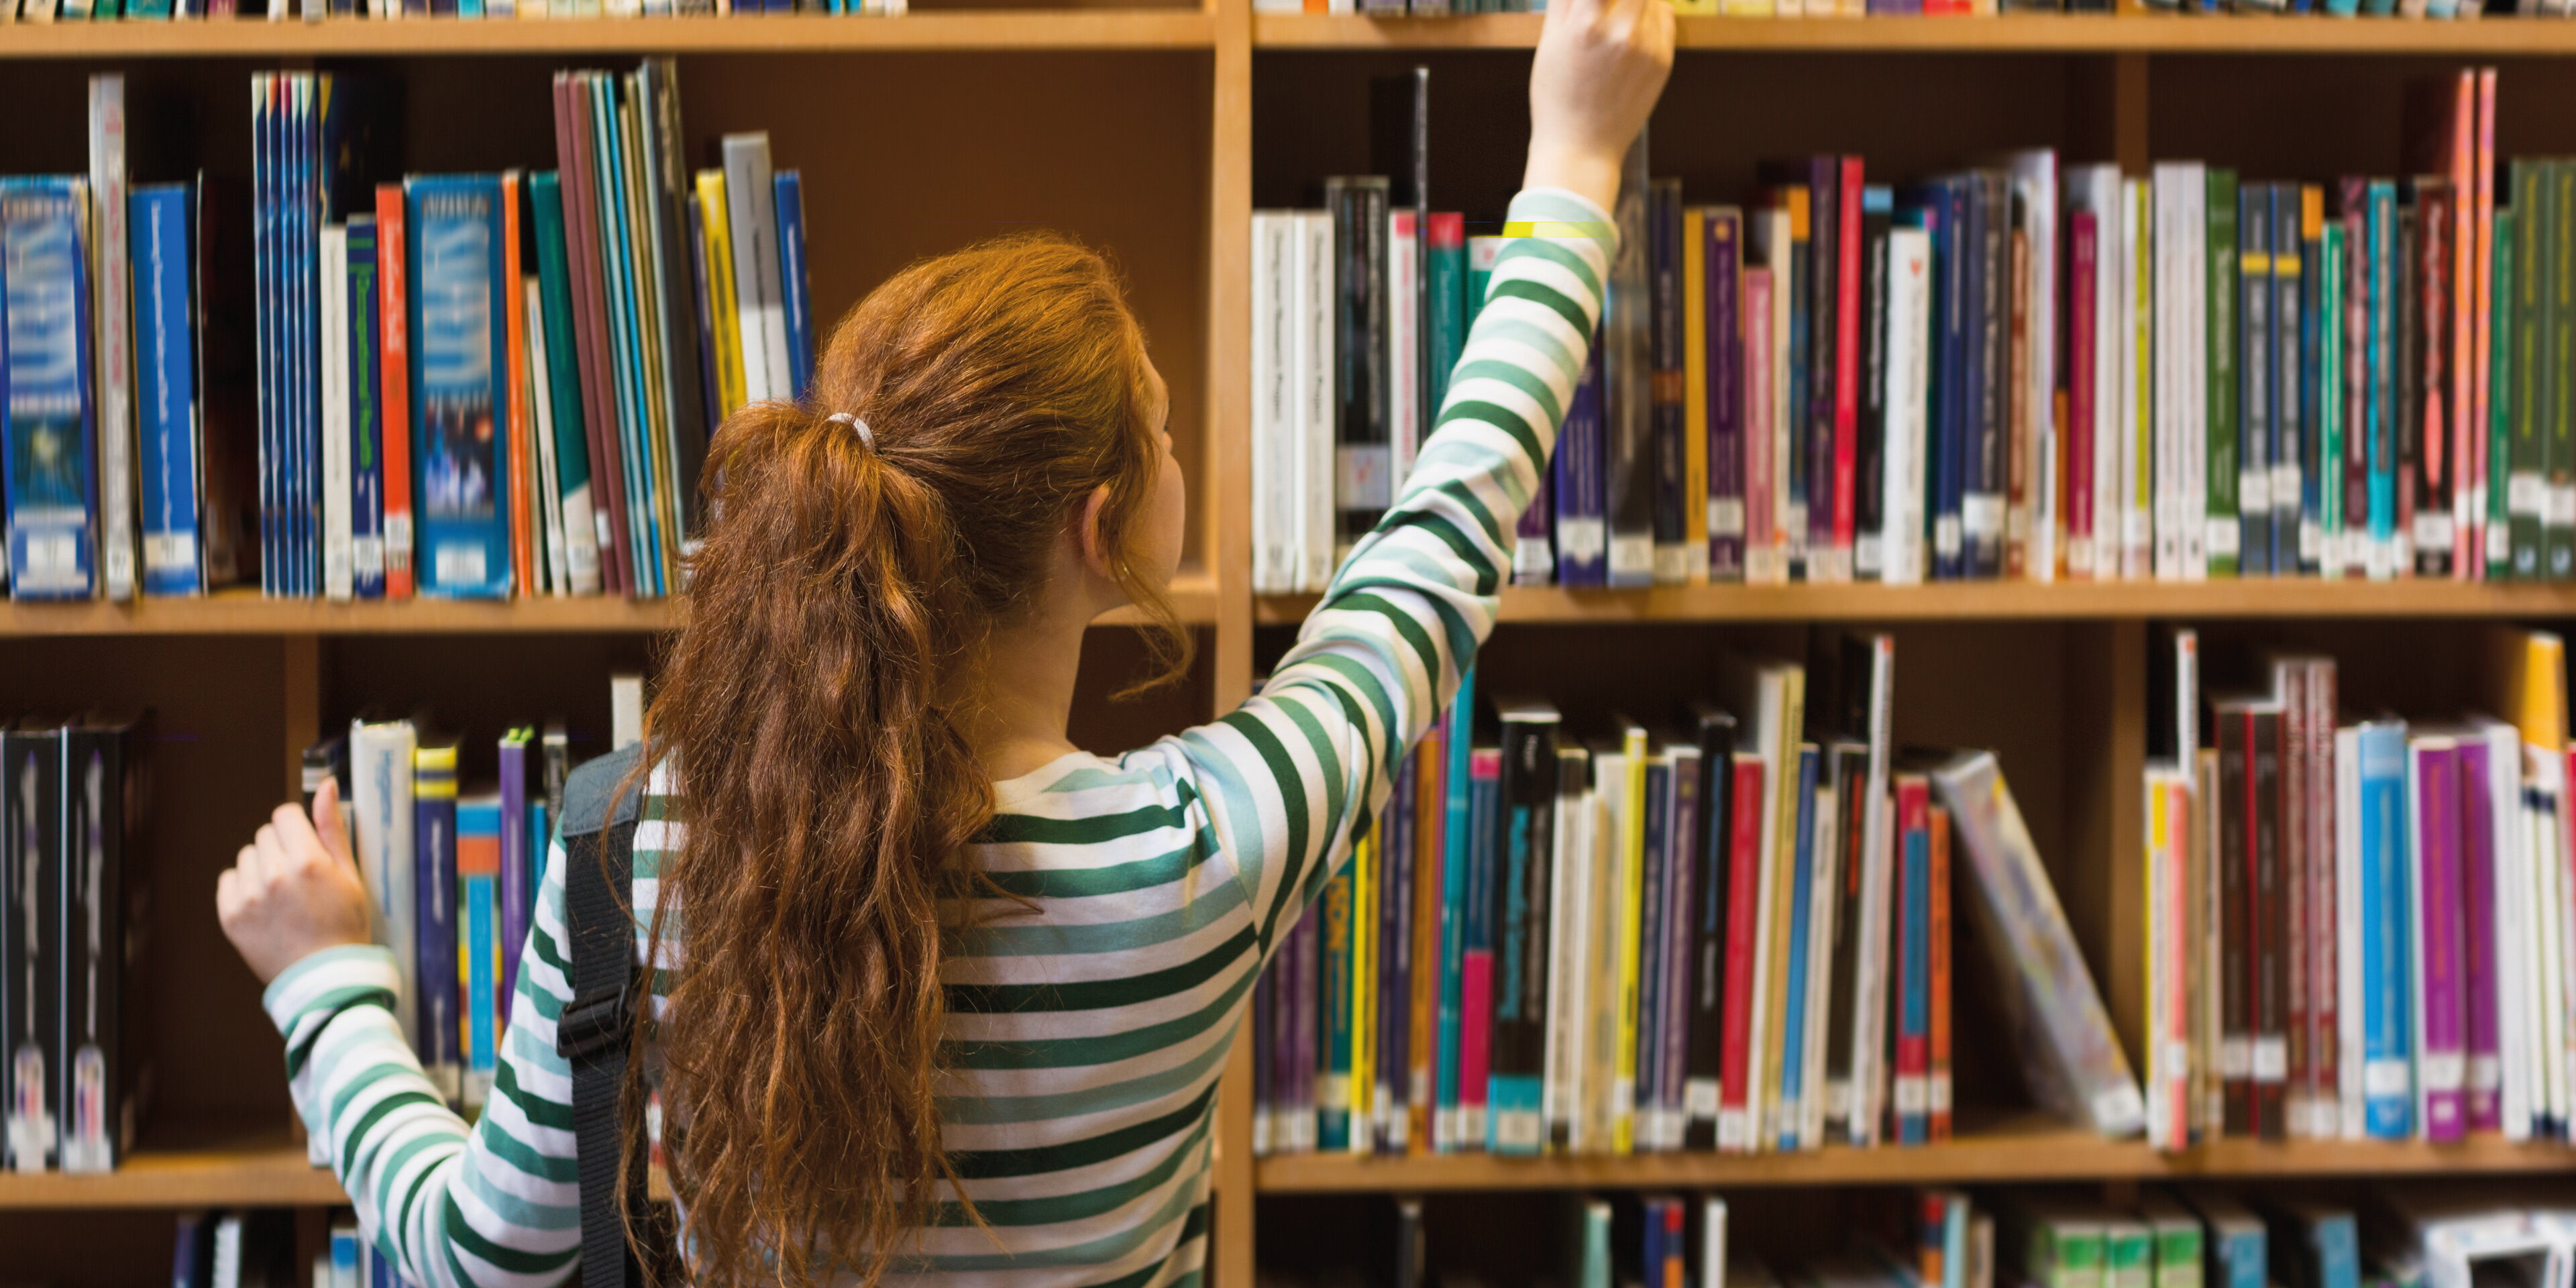 Книги найдут своего читателя. Читатели в библиотеке. Подростки в библиотеке. Книжки в библиотеке. Девушка в библиотеке.